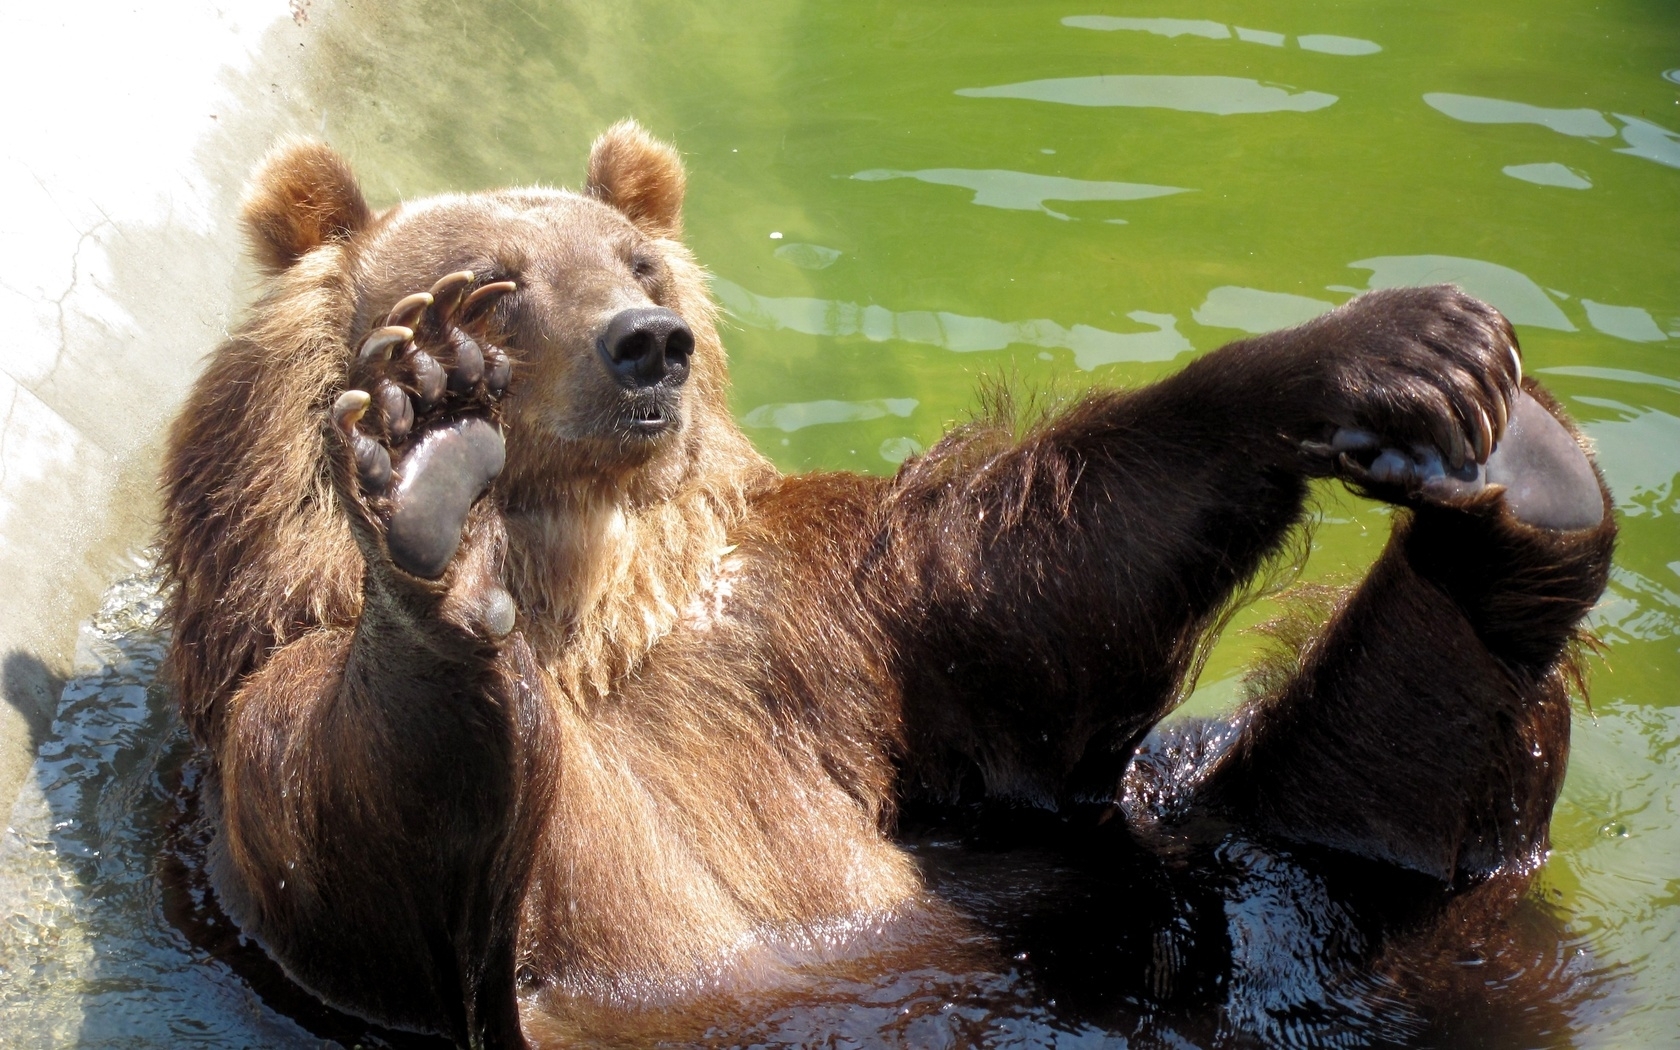 Скачать обои бесплатно Медведи, Животные картинка на рабочий стол ПК